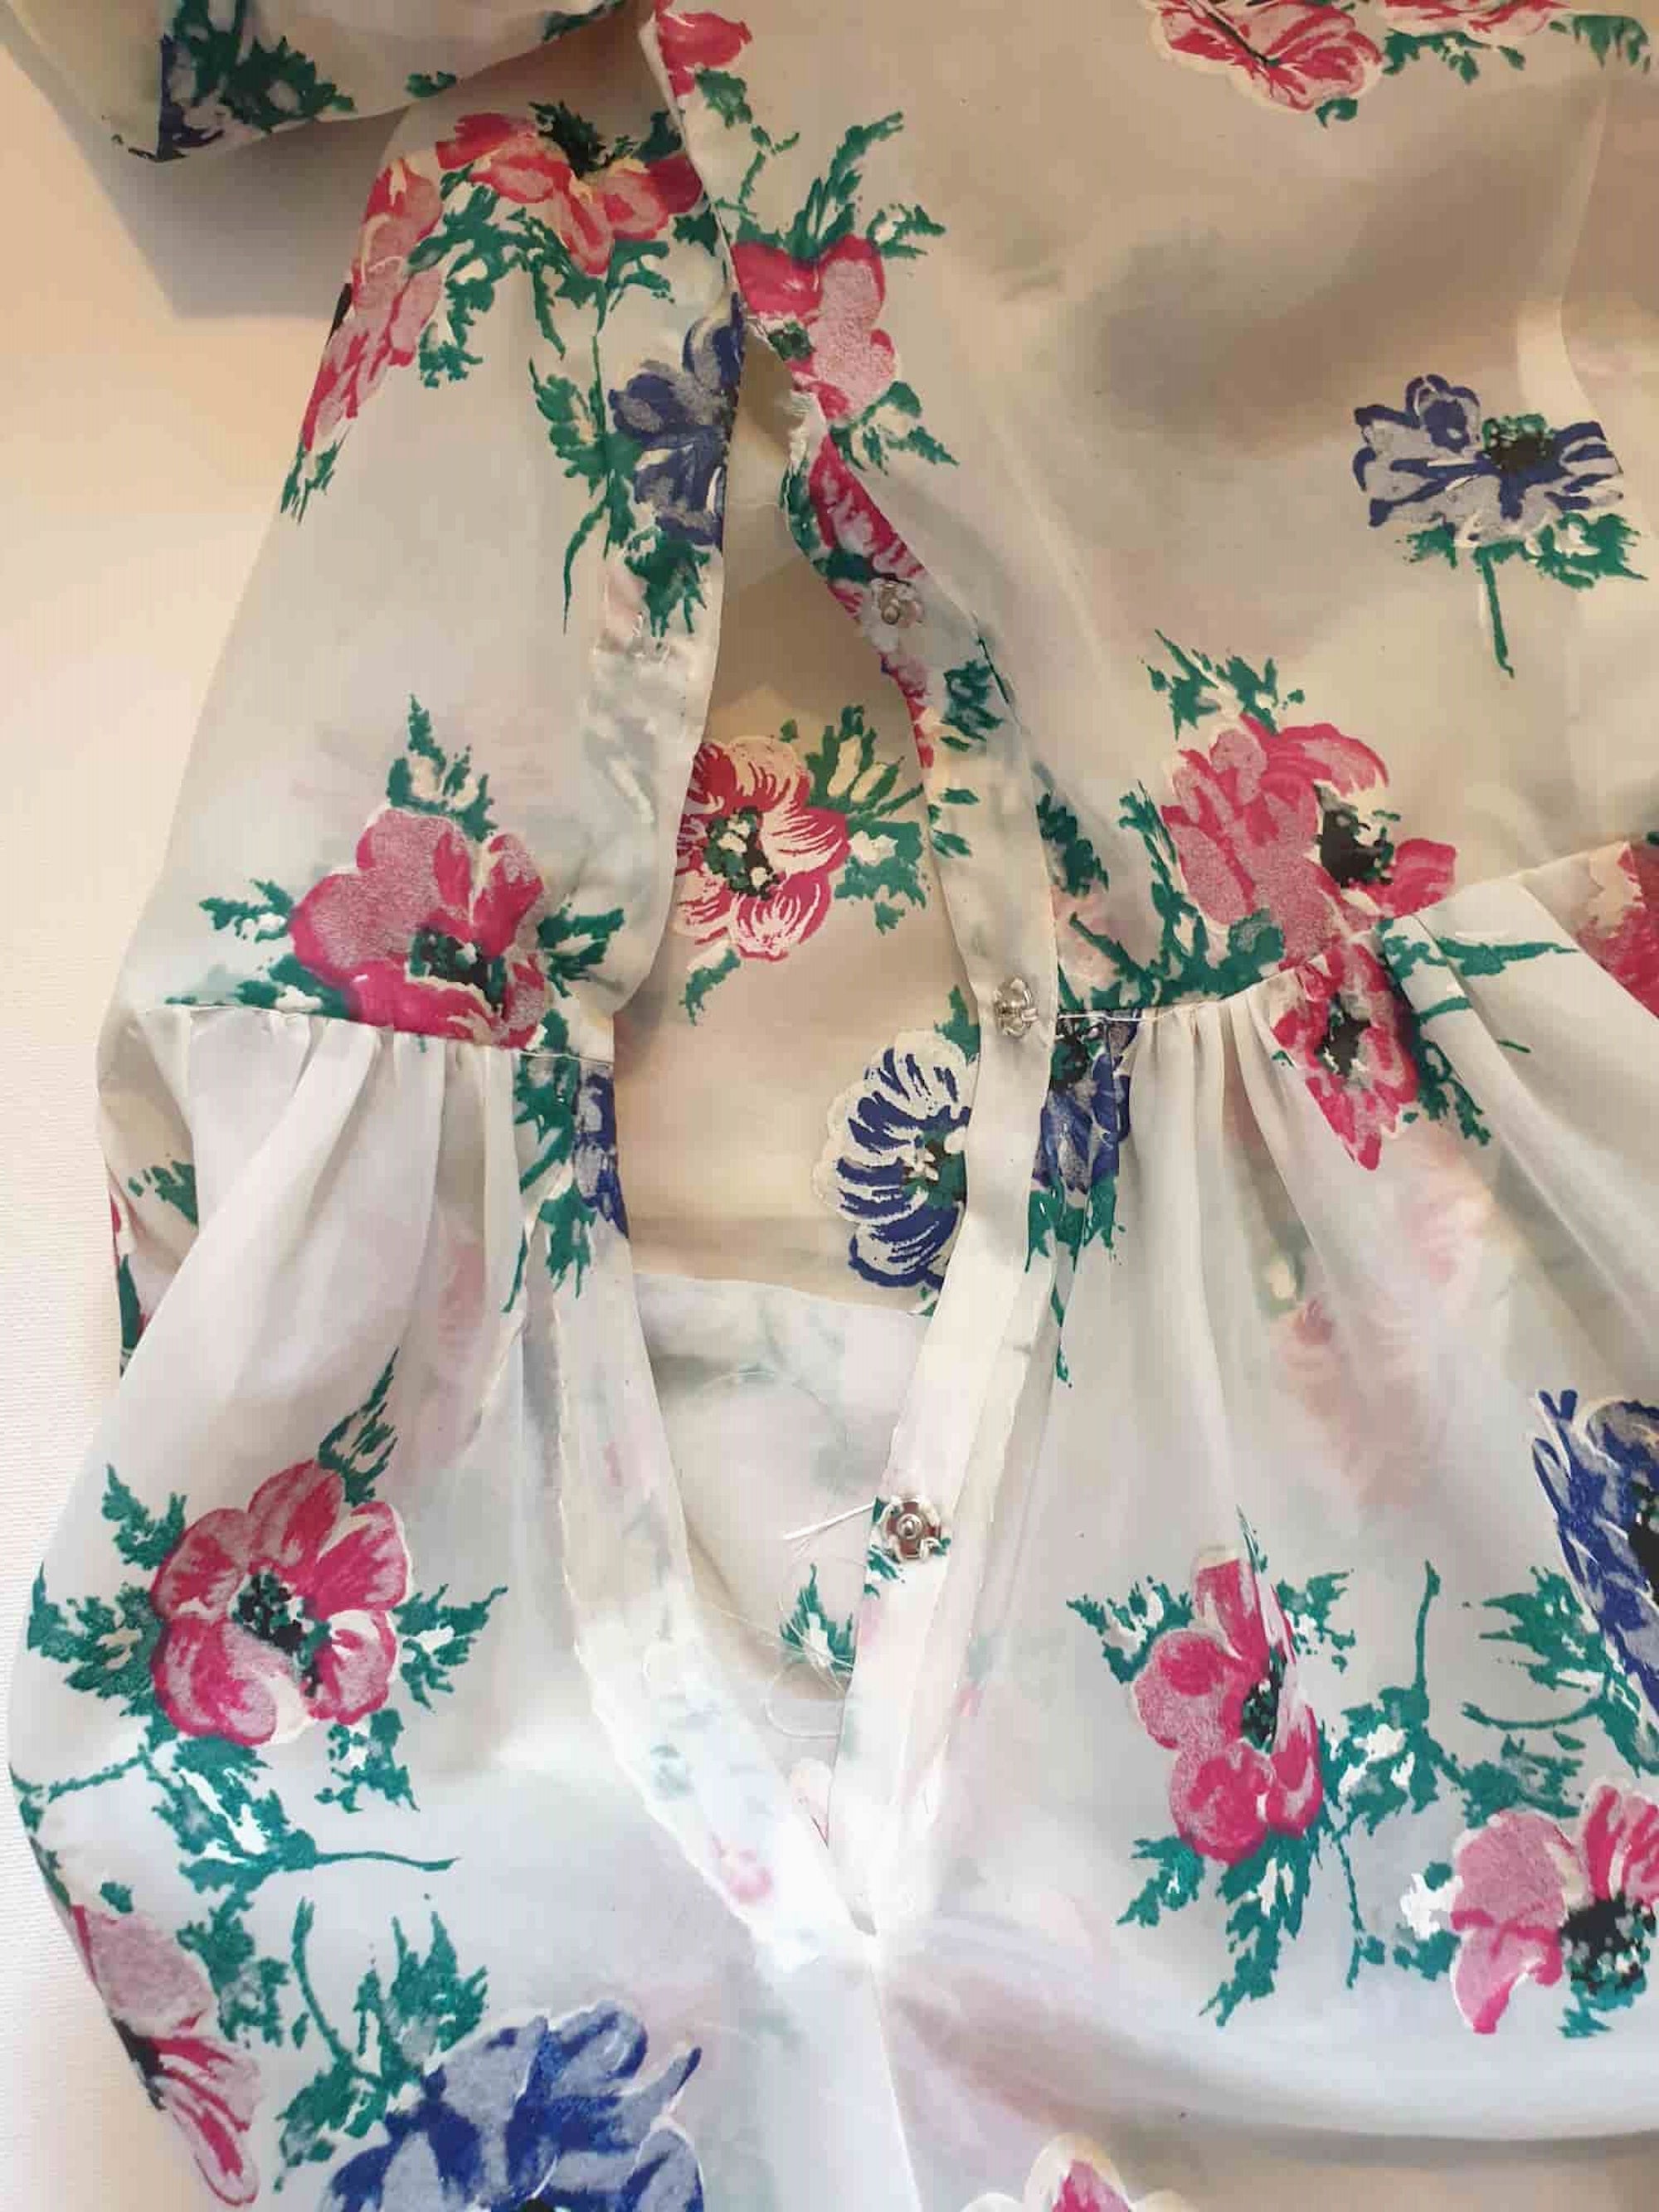 1950s vintage sheer flocked floral fit and flare dress 